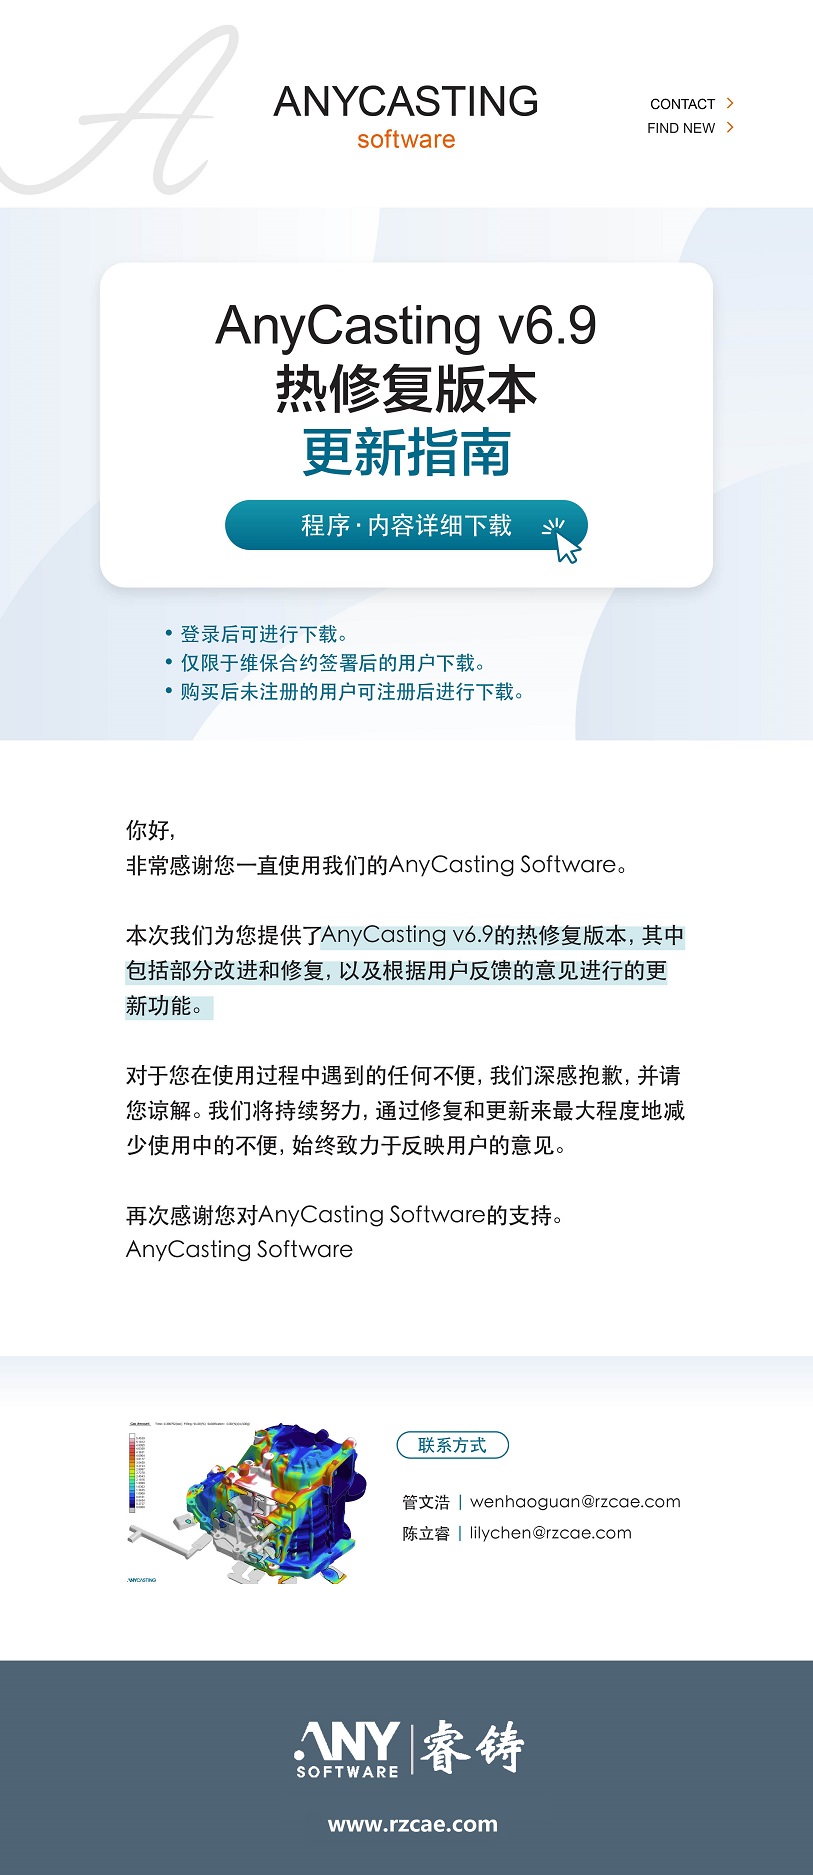 AnyCasting v6.9.3 Hotfix热修补程序上线